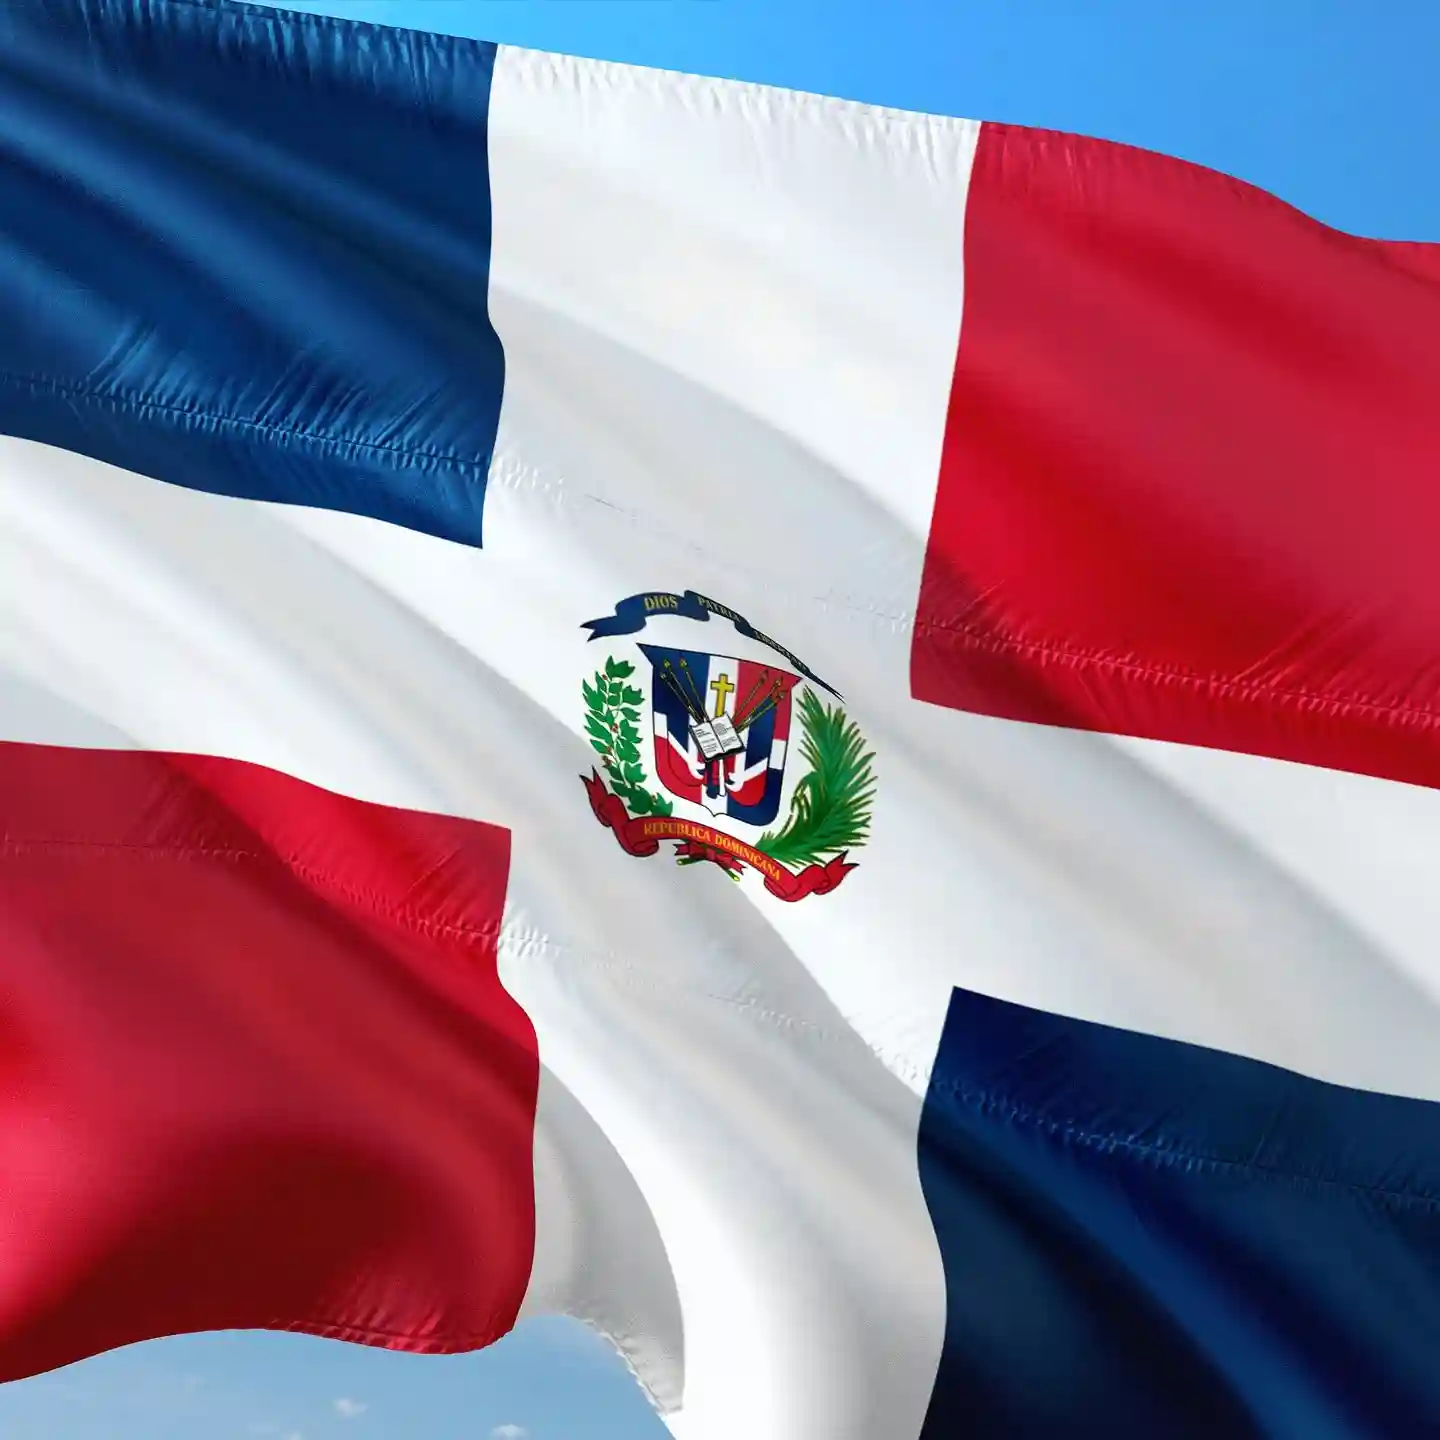 Encuestas-remuneradas-en-Republica-Dominicana